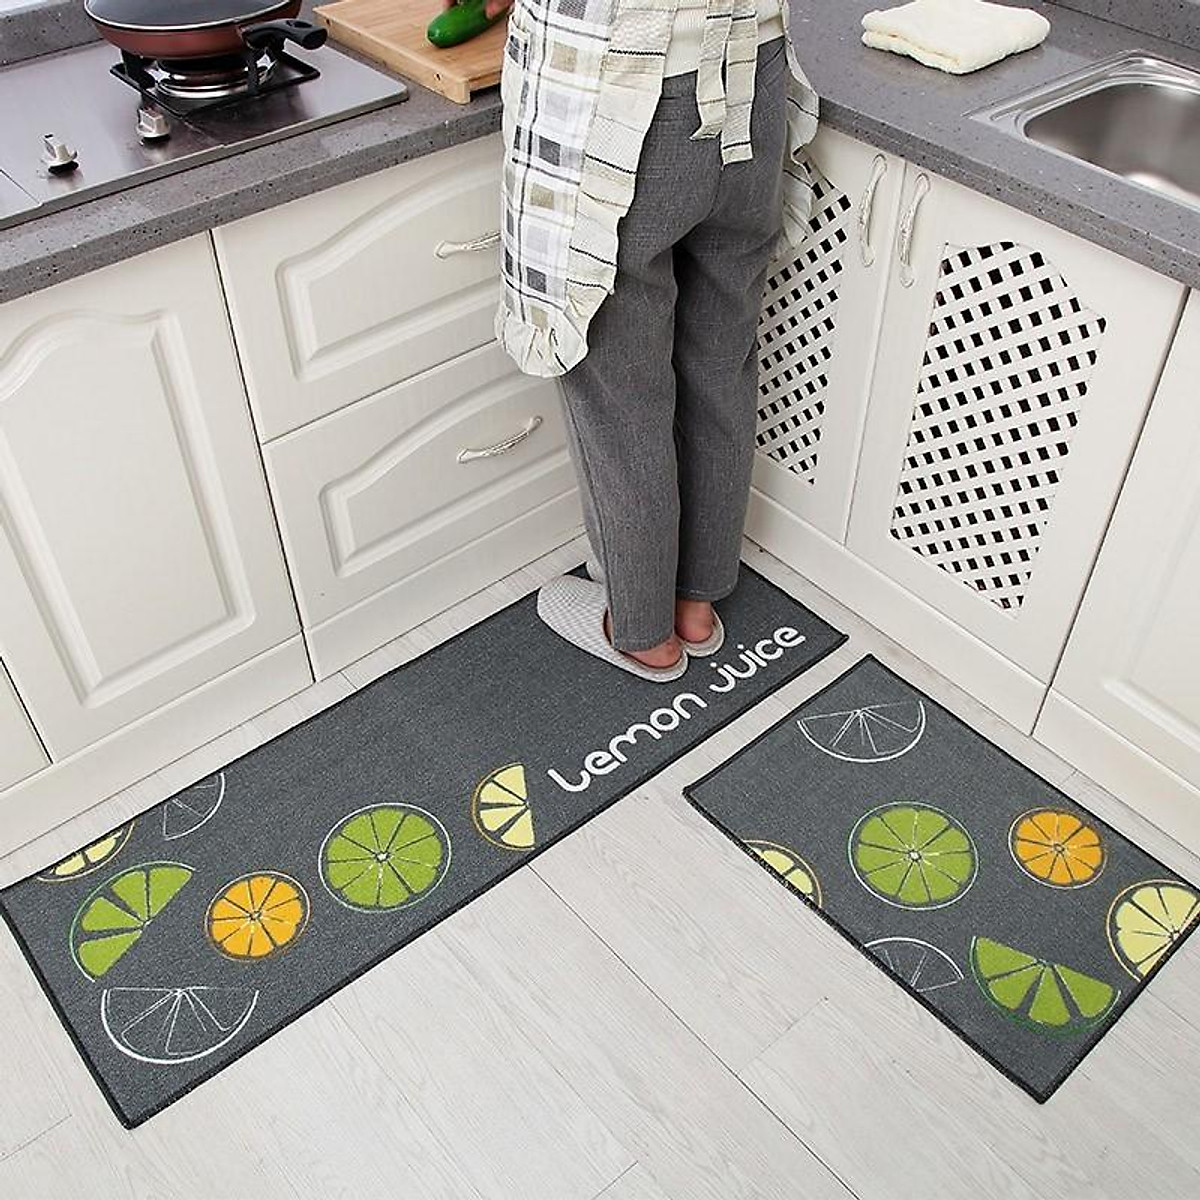 Với thảm lót sàn nhà bếp, bạn có thể tận hưởng sức sống và sự thoải mái khi nấu ăn mỗi ngày.